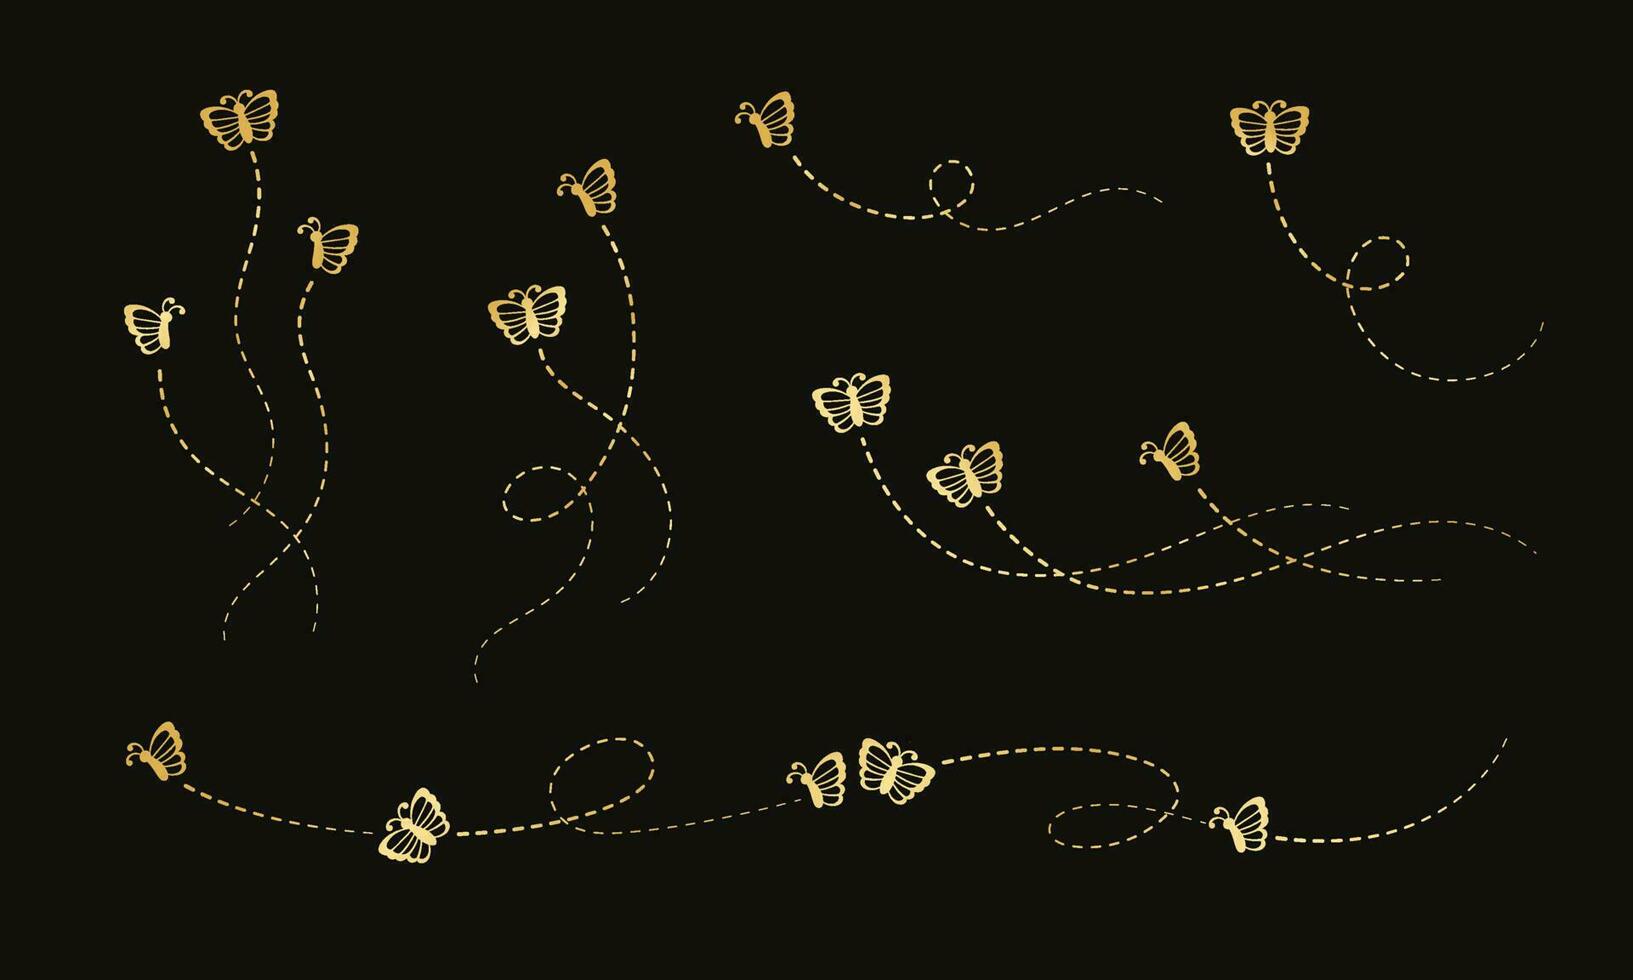 Gold Schmetterlinge Satz. golden fliegend Schmetterling mit gepunktet Linie Route. schön elegant Insekten mit öffnen Flügel Pfad. Vektor Design Elemente zum Frühling und Sommer.